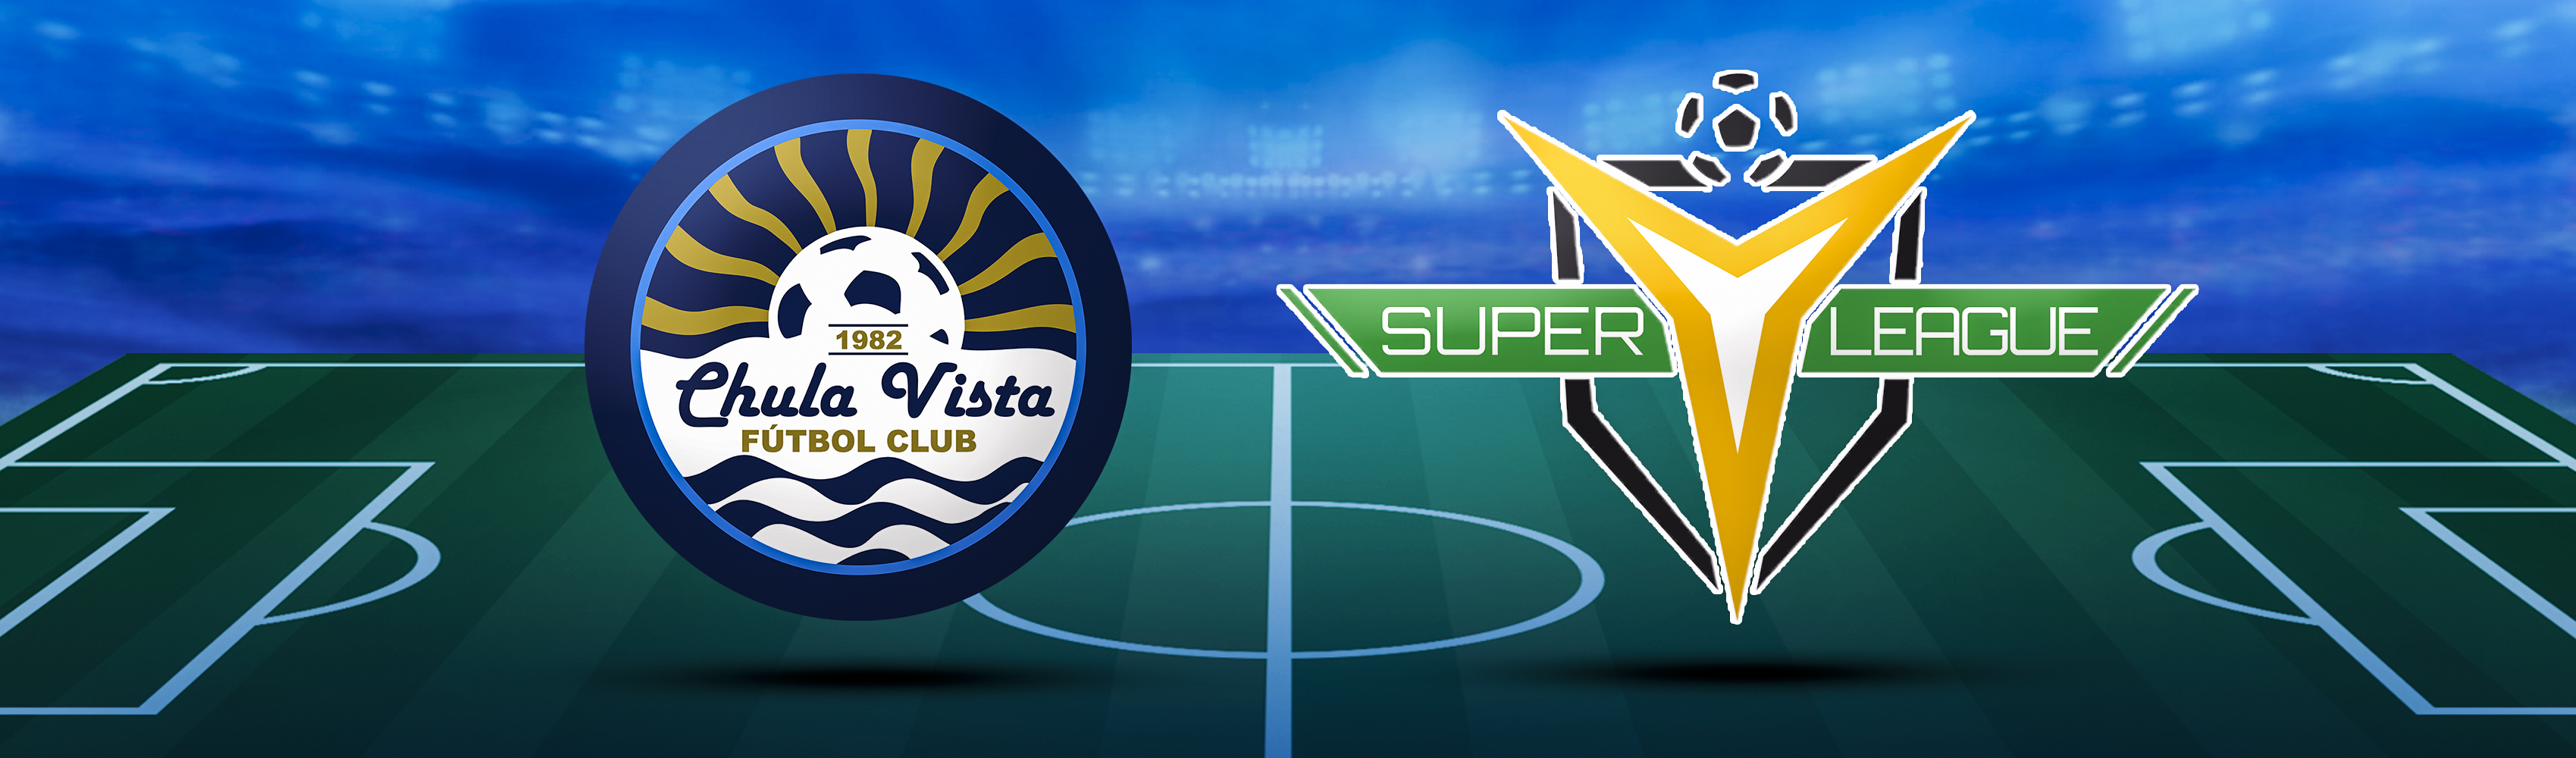 Chula Vista FC joins the Super Y League